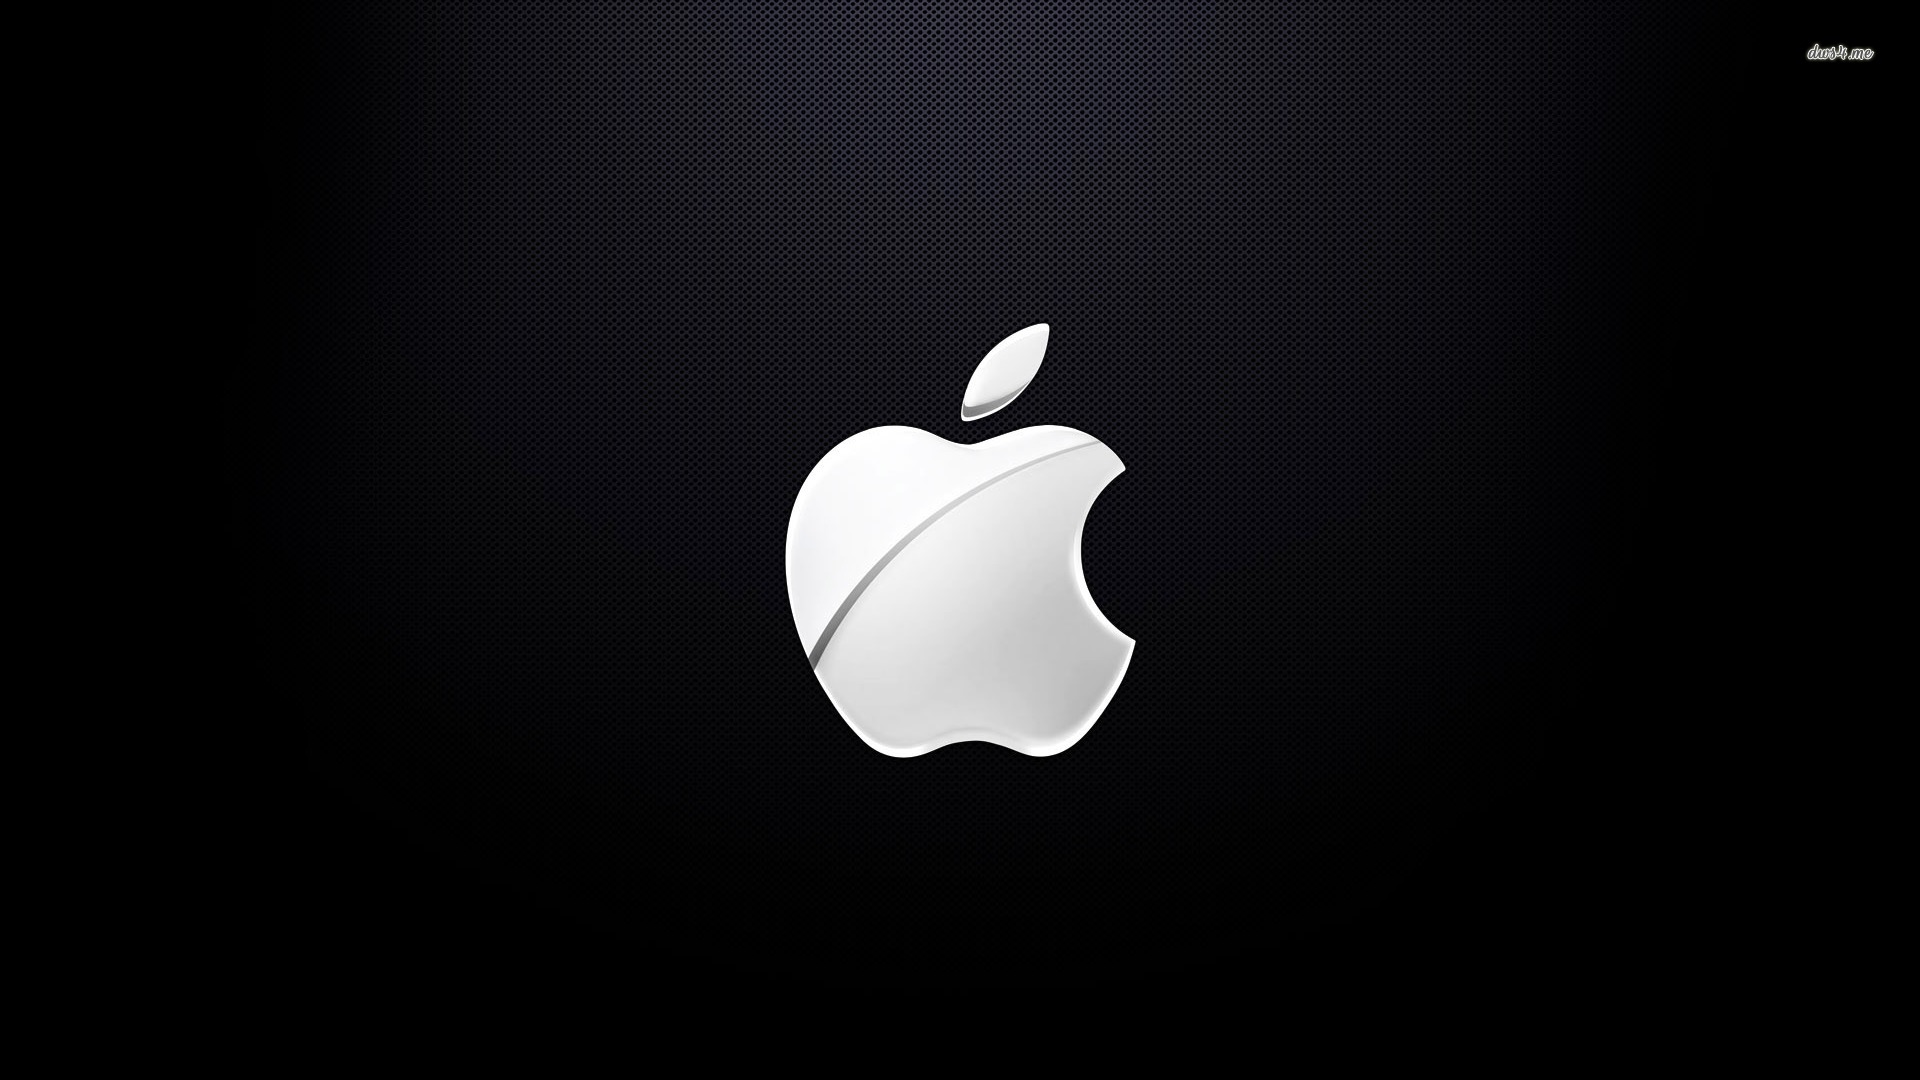 White Apple Logo - wallpaper.